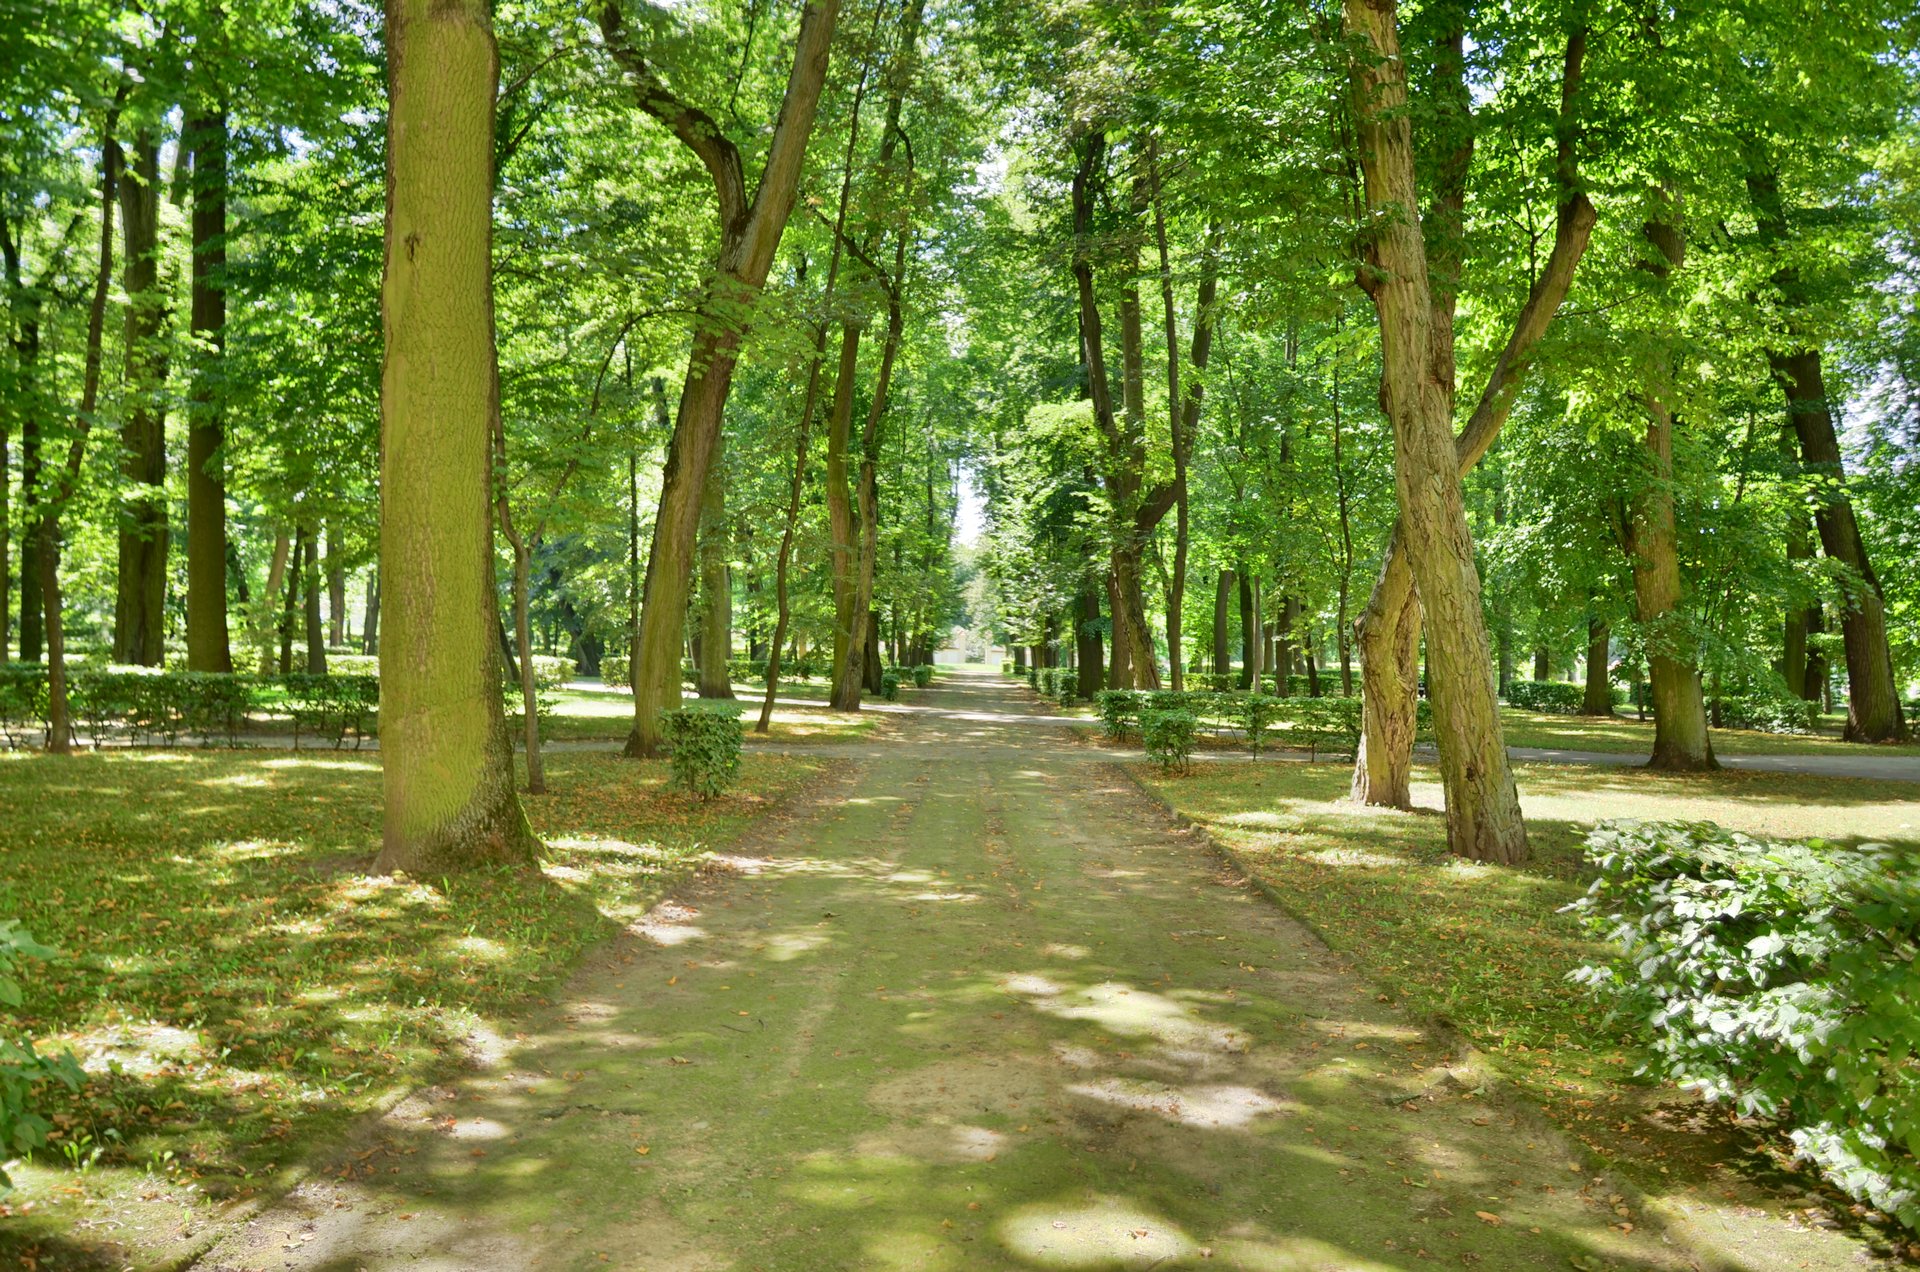 Białystok Pałac Branickich w Białymstoku ogród Wersal Podlaskifree photo darmowe zdjęcie